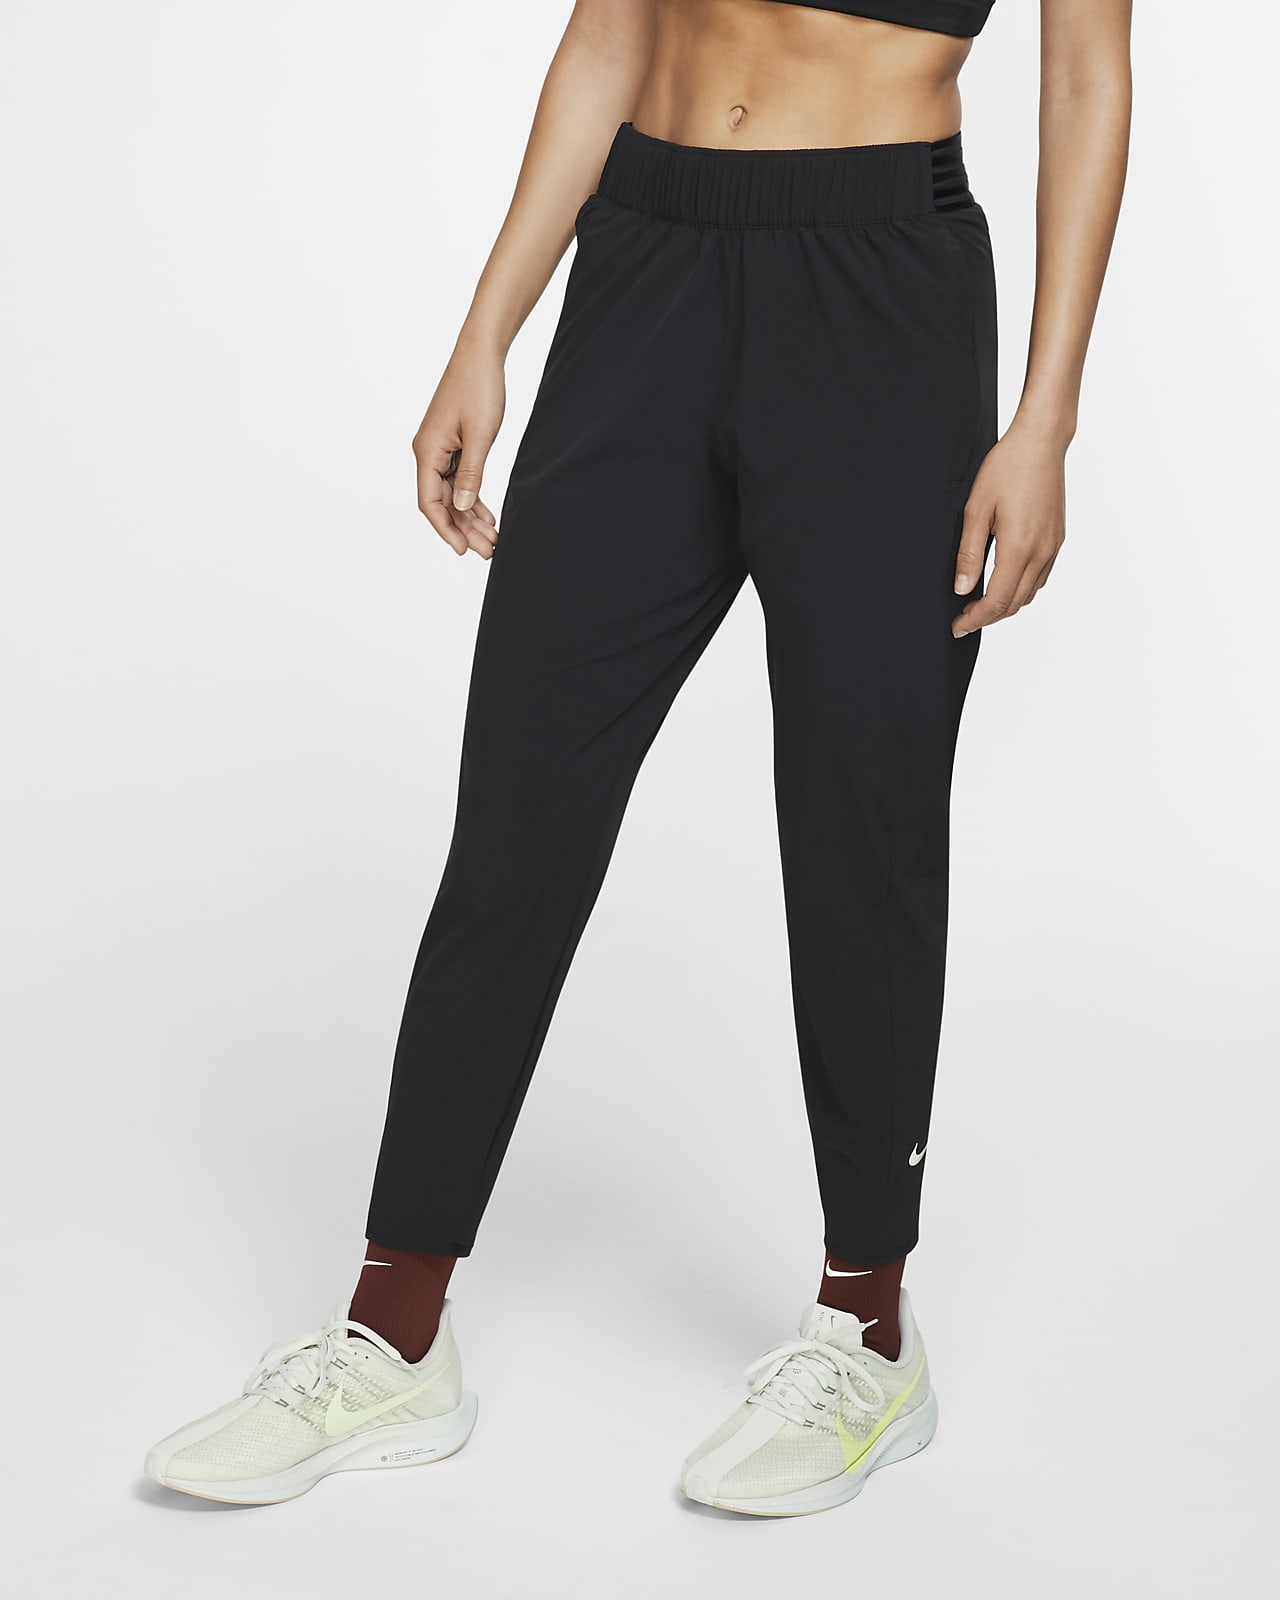 7/8 Running Trousers. Nike AU